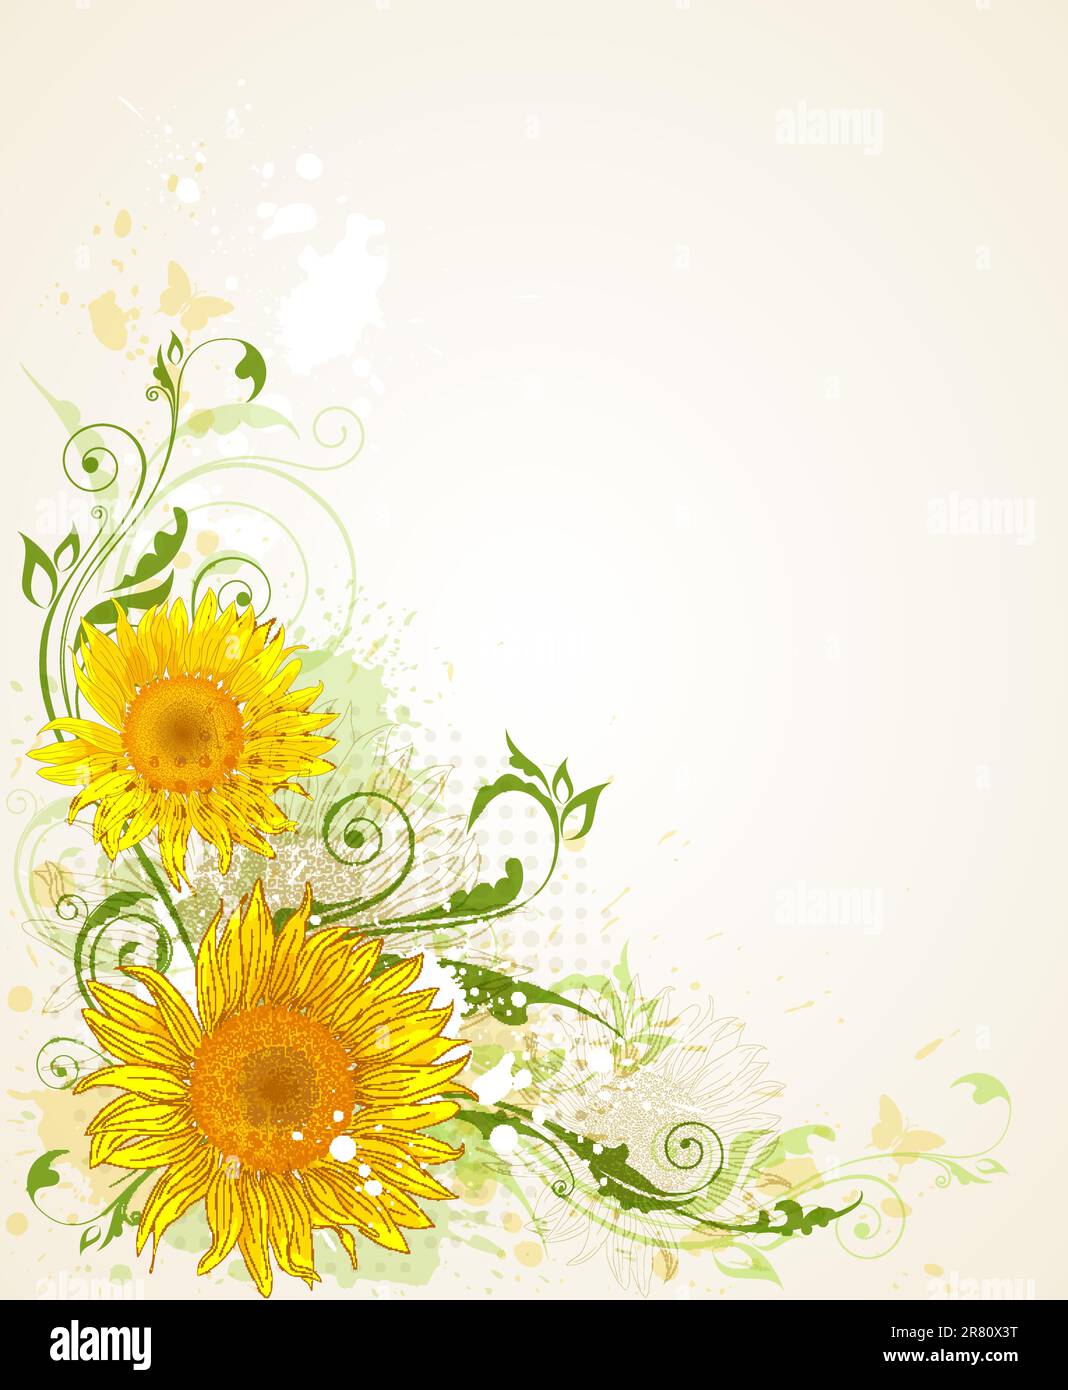 Vettore decorativo grunge floral background con girasoli Illustrazione Vettoriale